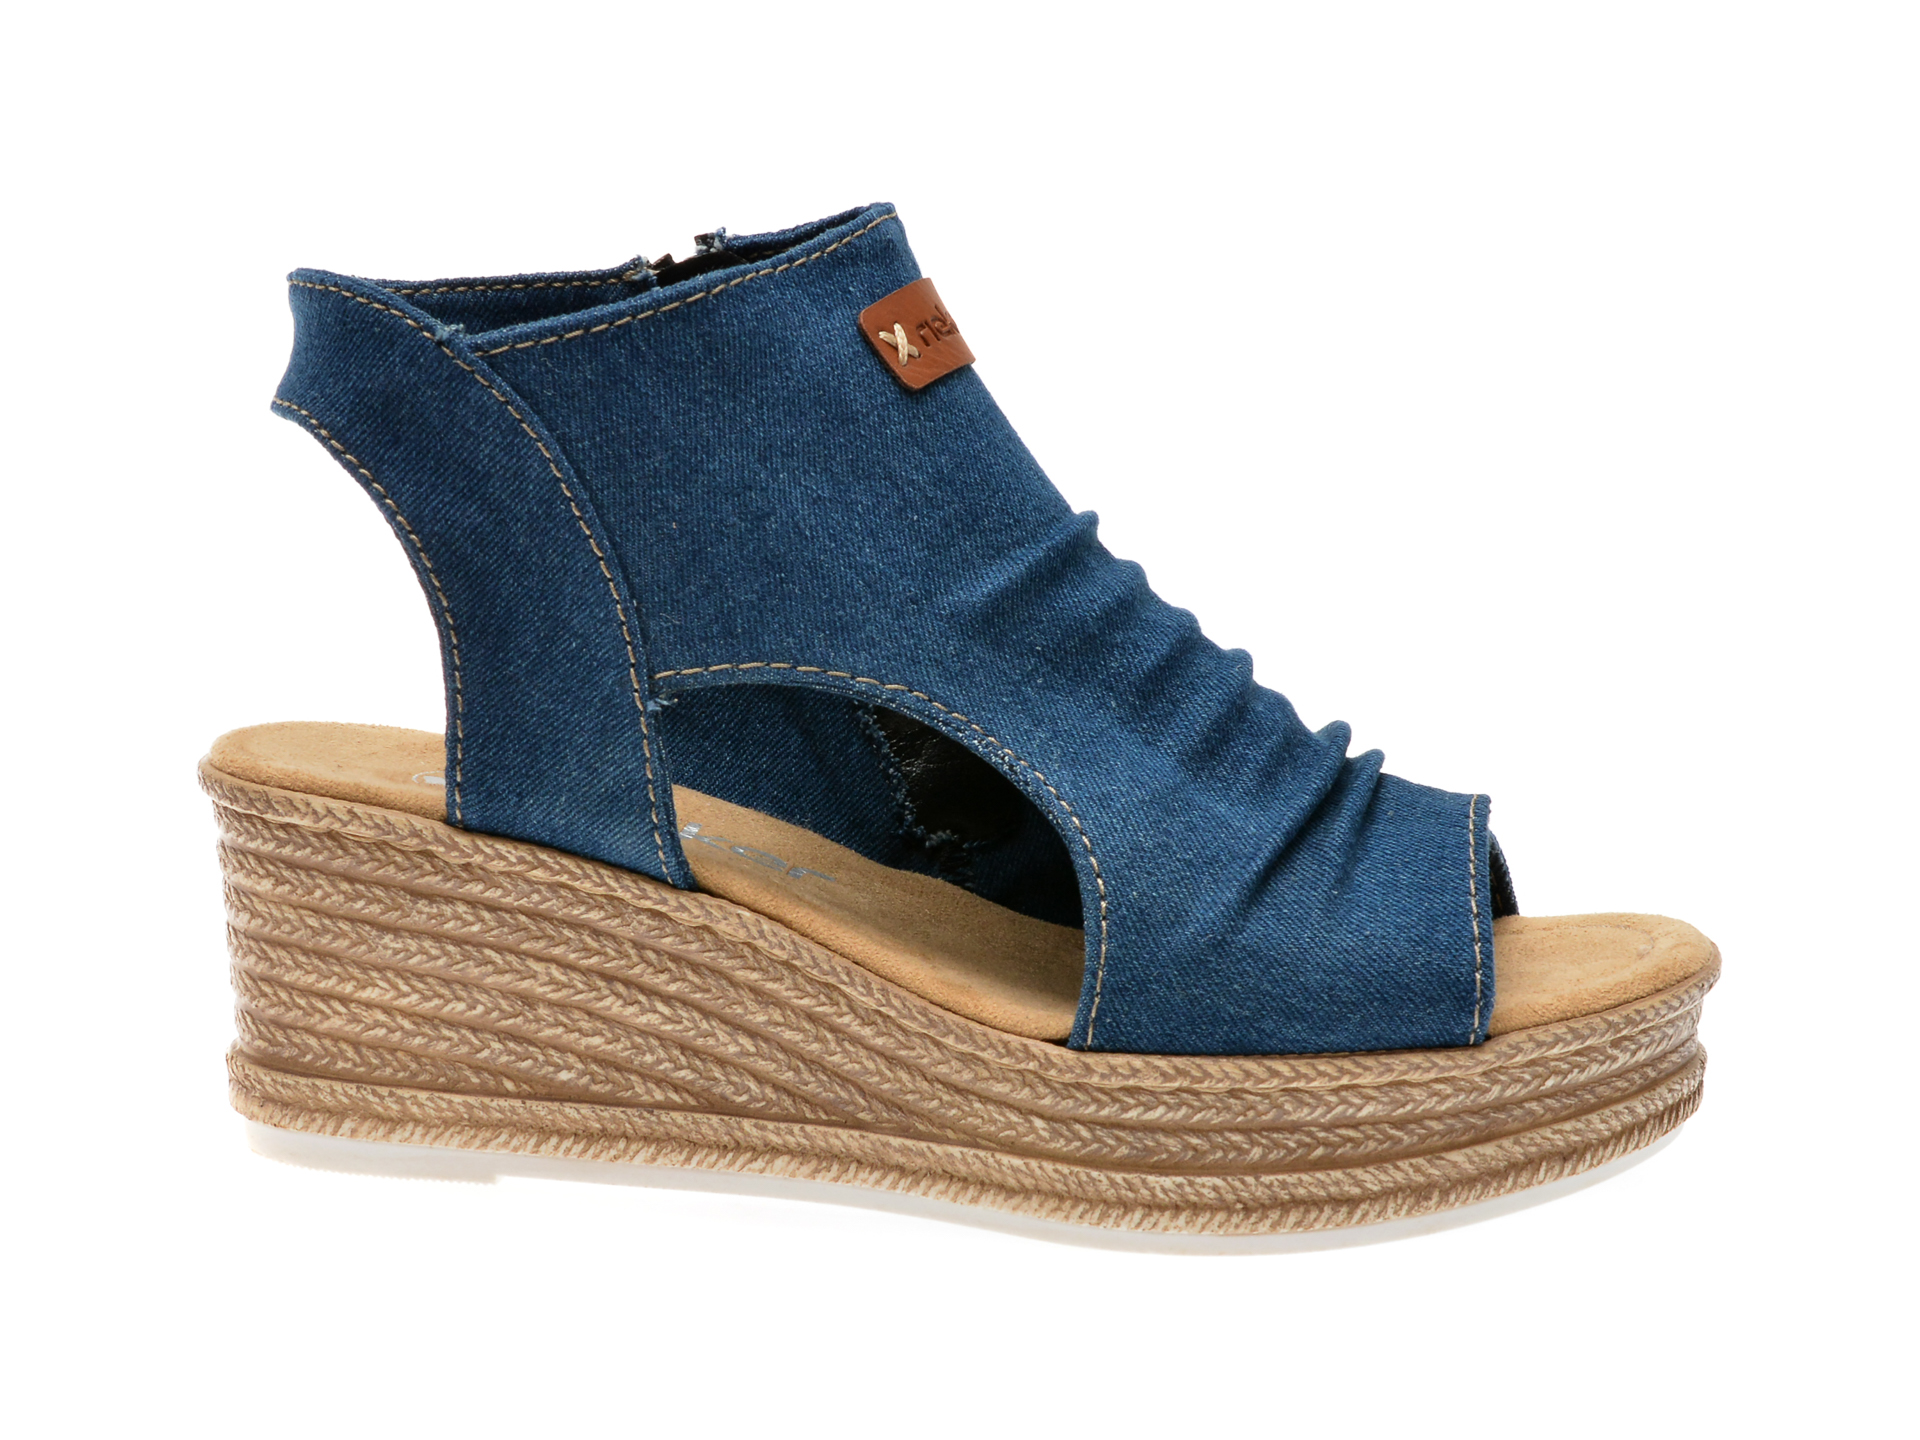 Sandale casual RIEKER albastre, 68791, din material textil